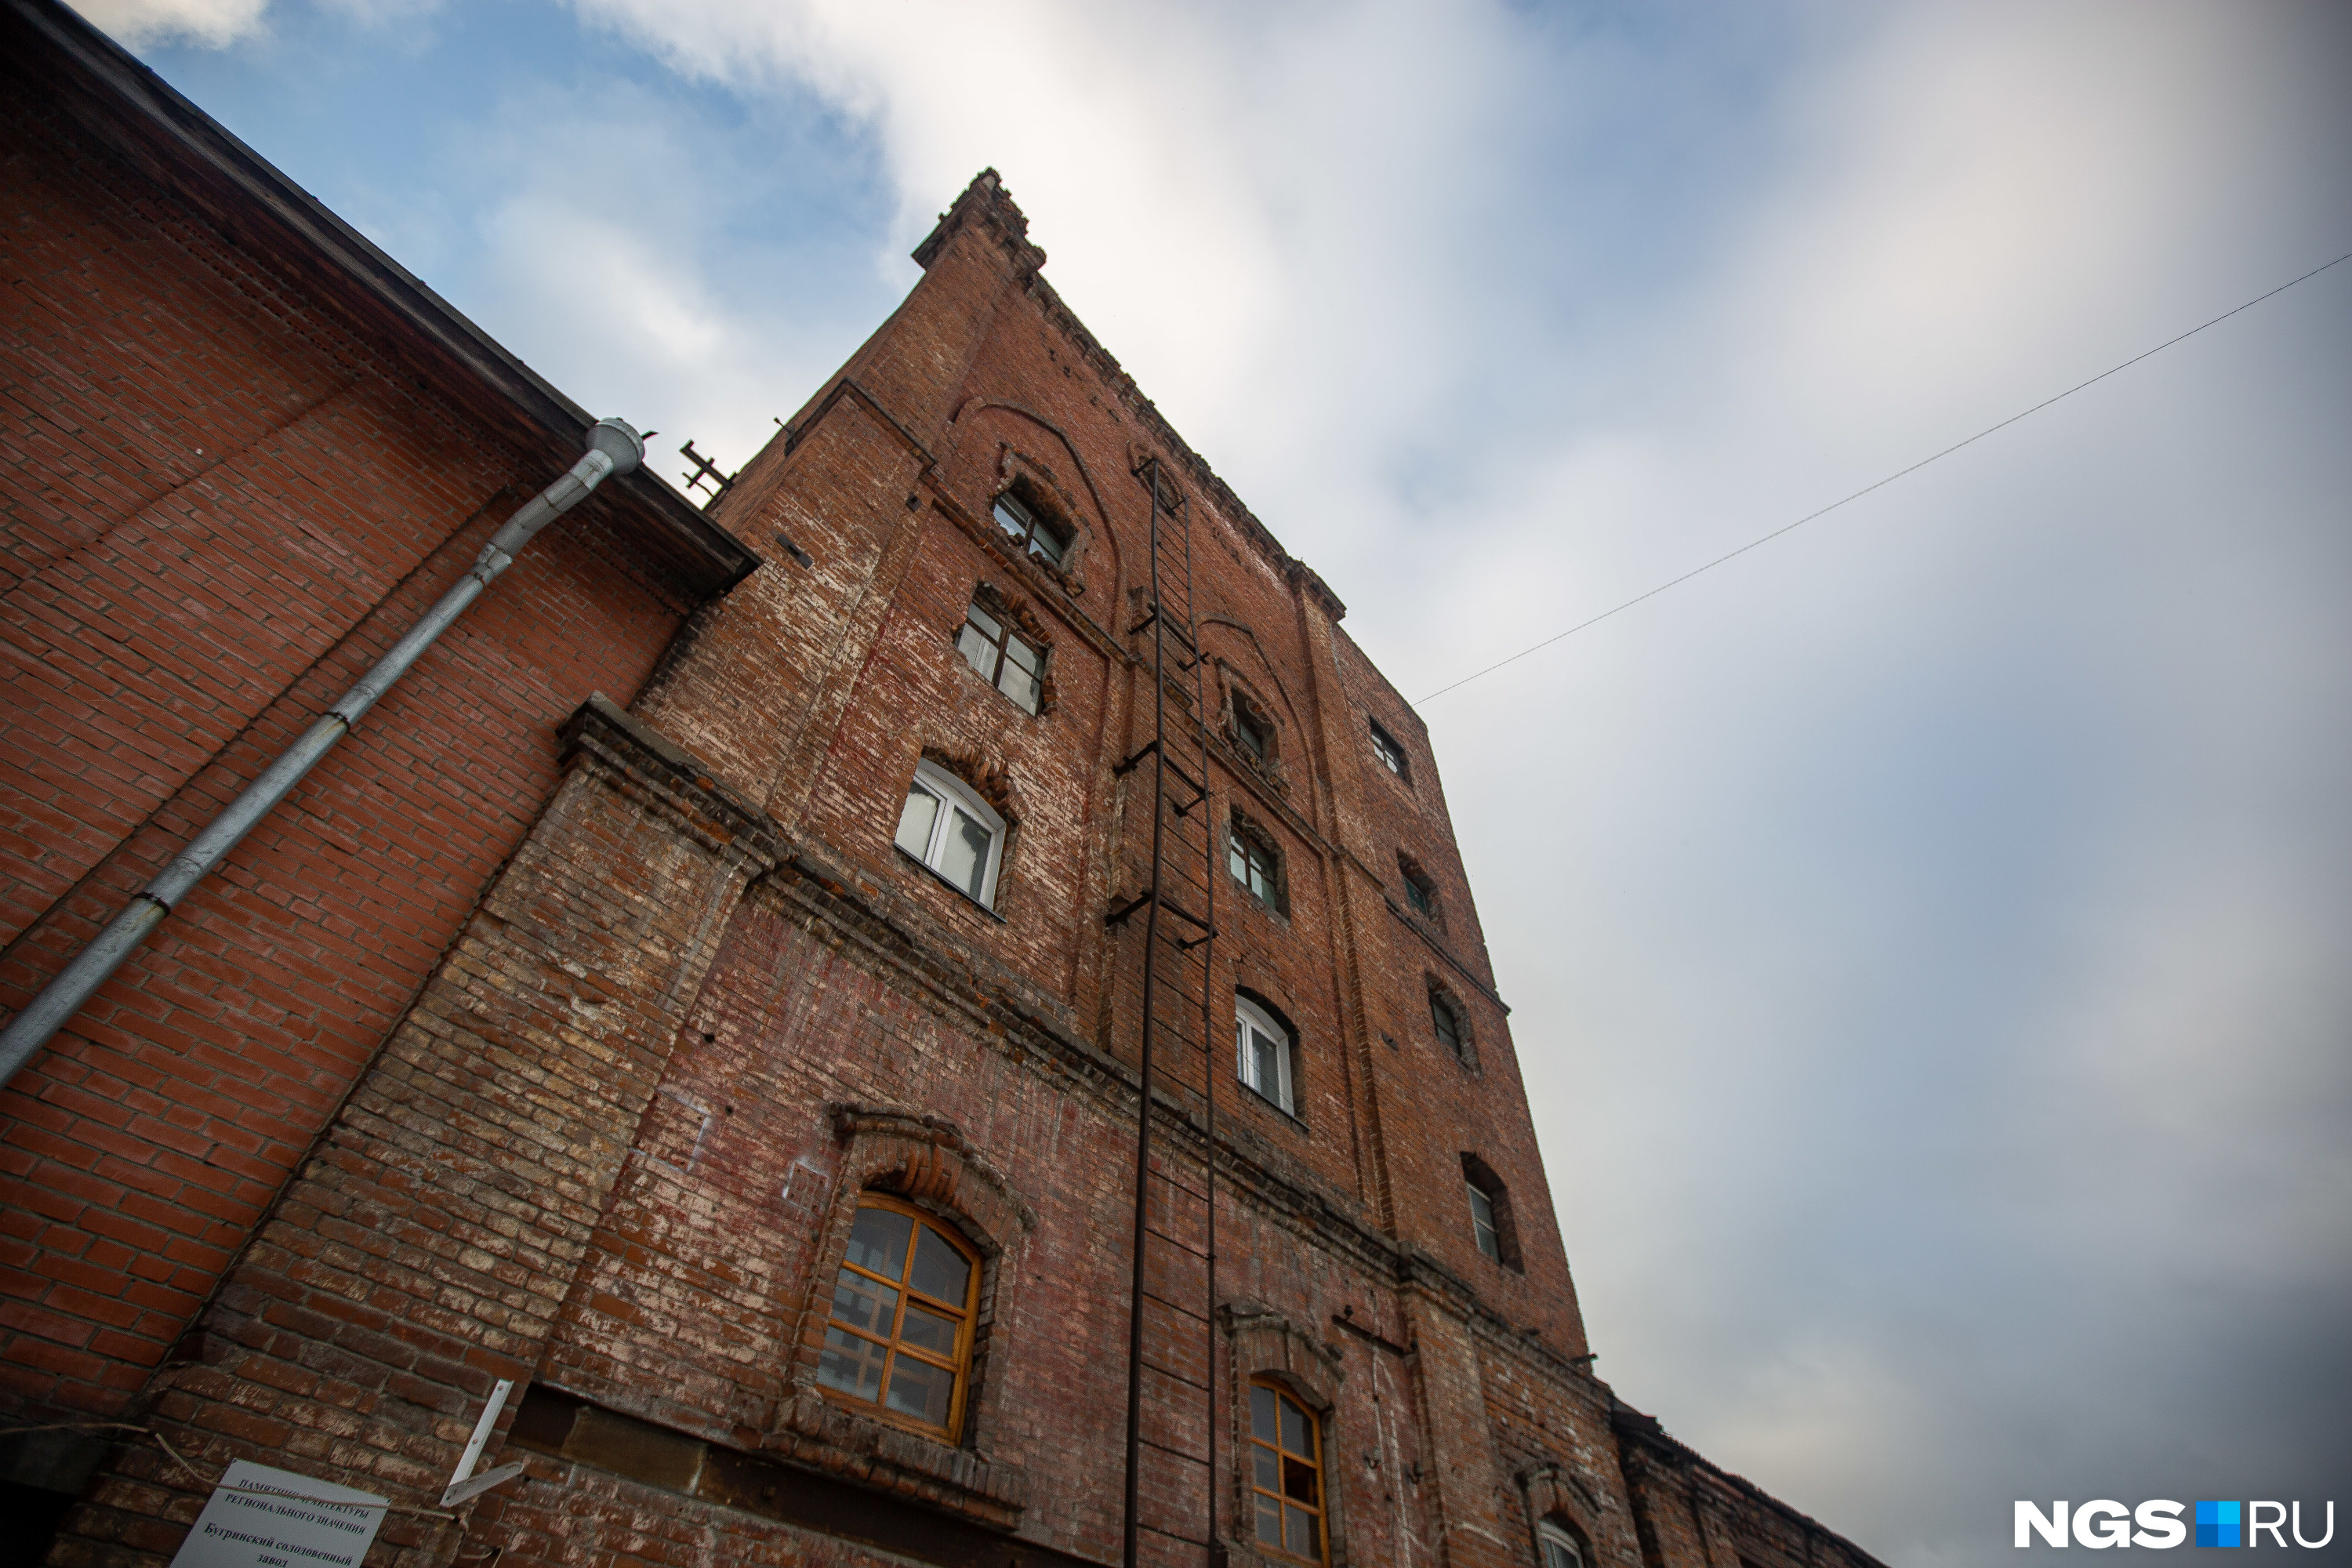 Здание солодовенного завода — единственный сохранившийся на левом берегу памятник истории